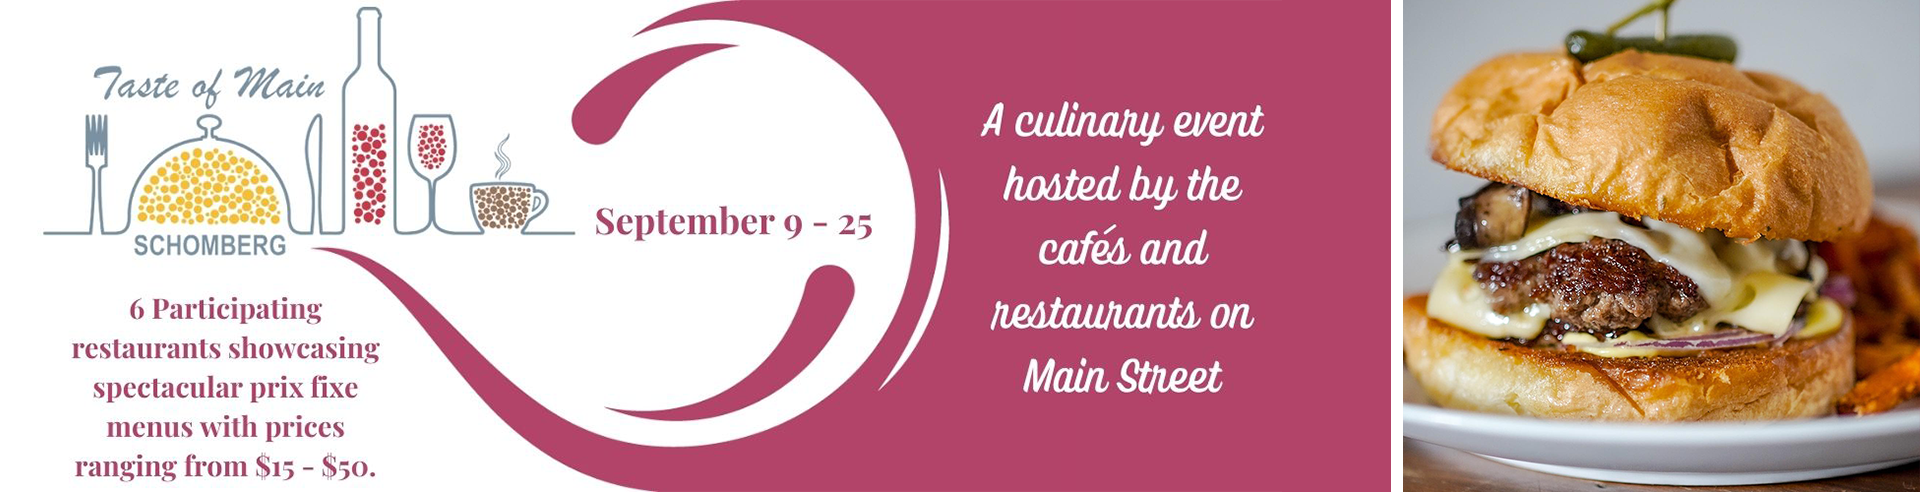 Taste of Main dining event september 9 - 25 at schomberg main street restaurants header